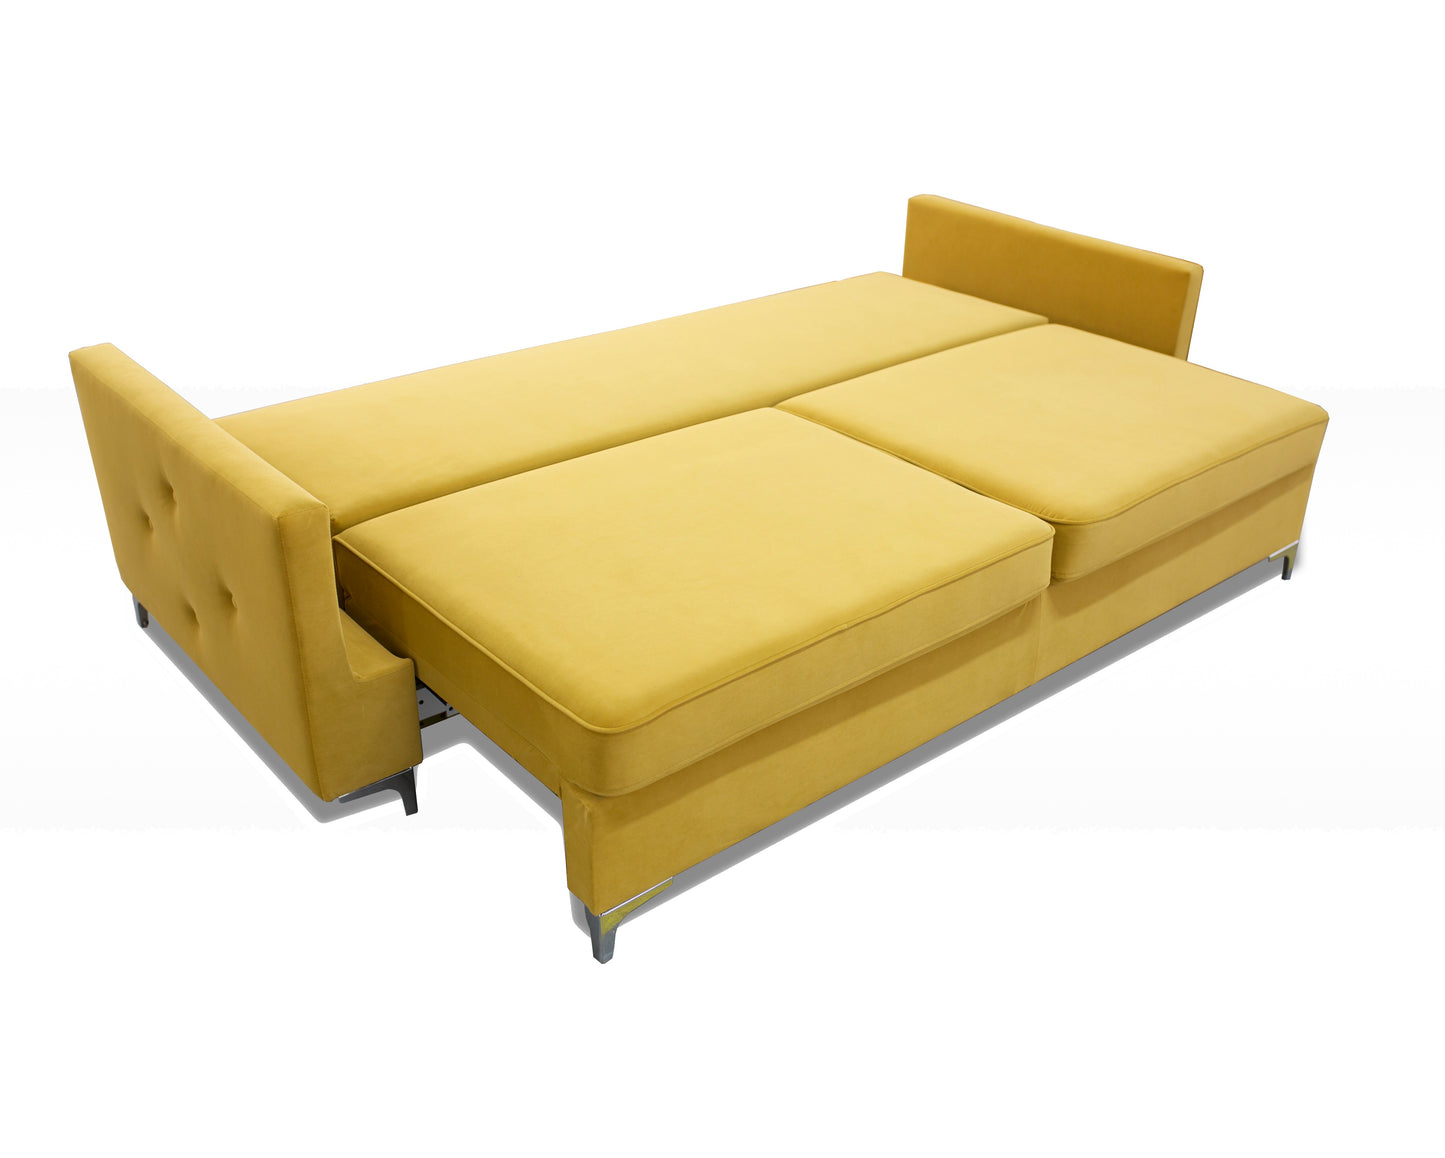 Funkcja spania w nowoczesnej kanapie sofie MOHITO to komfortowa i duża powierzchnia do codziennego wypoczynku.